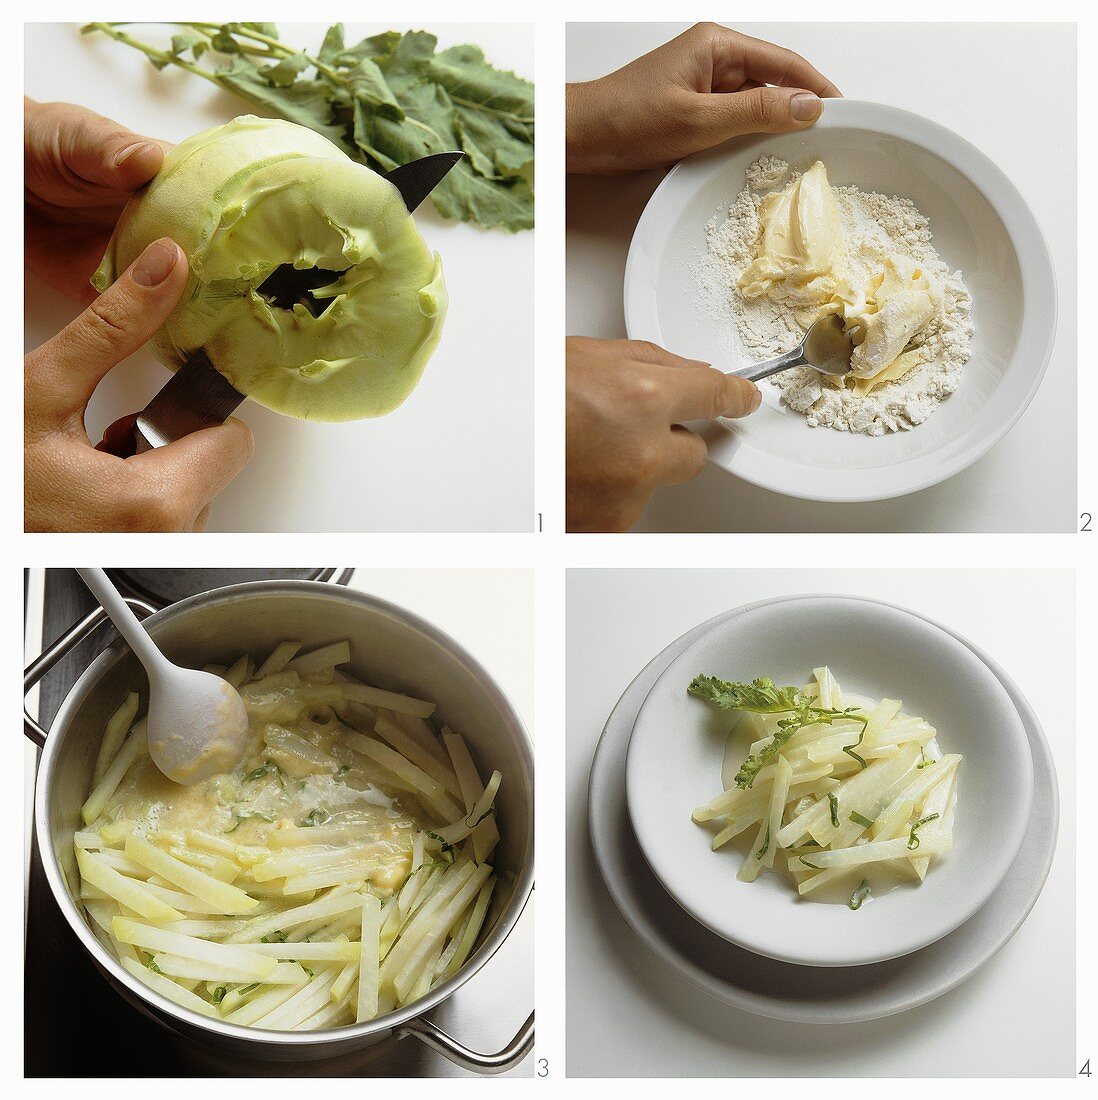 Preparing kohlrabi as a vegetable